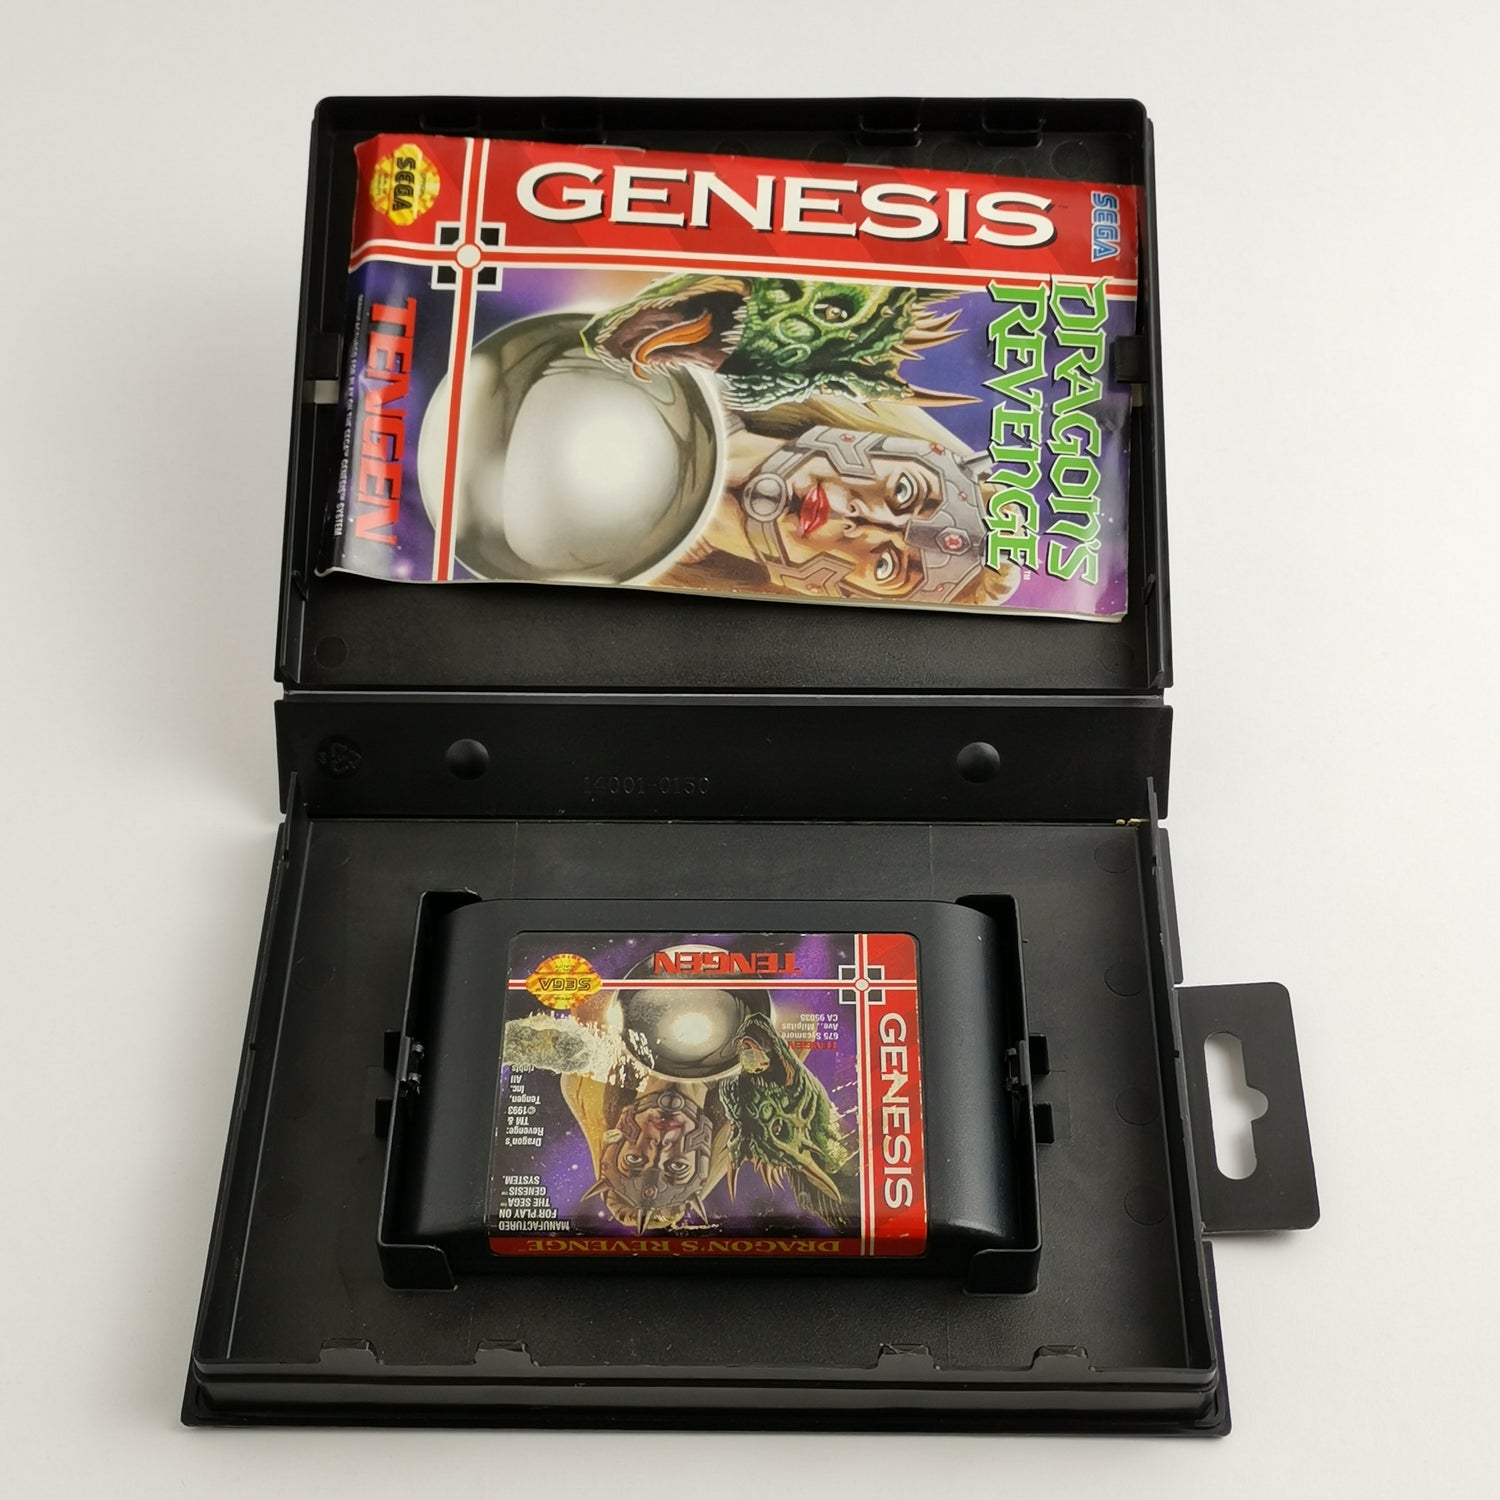 Sega Genesis Game : Dragons Revenge - Original Packaging & Manual NTSC-U/C | Mega Drive USA